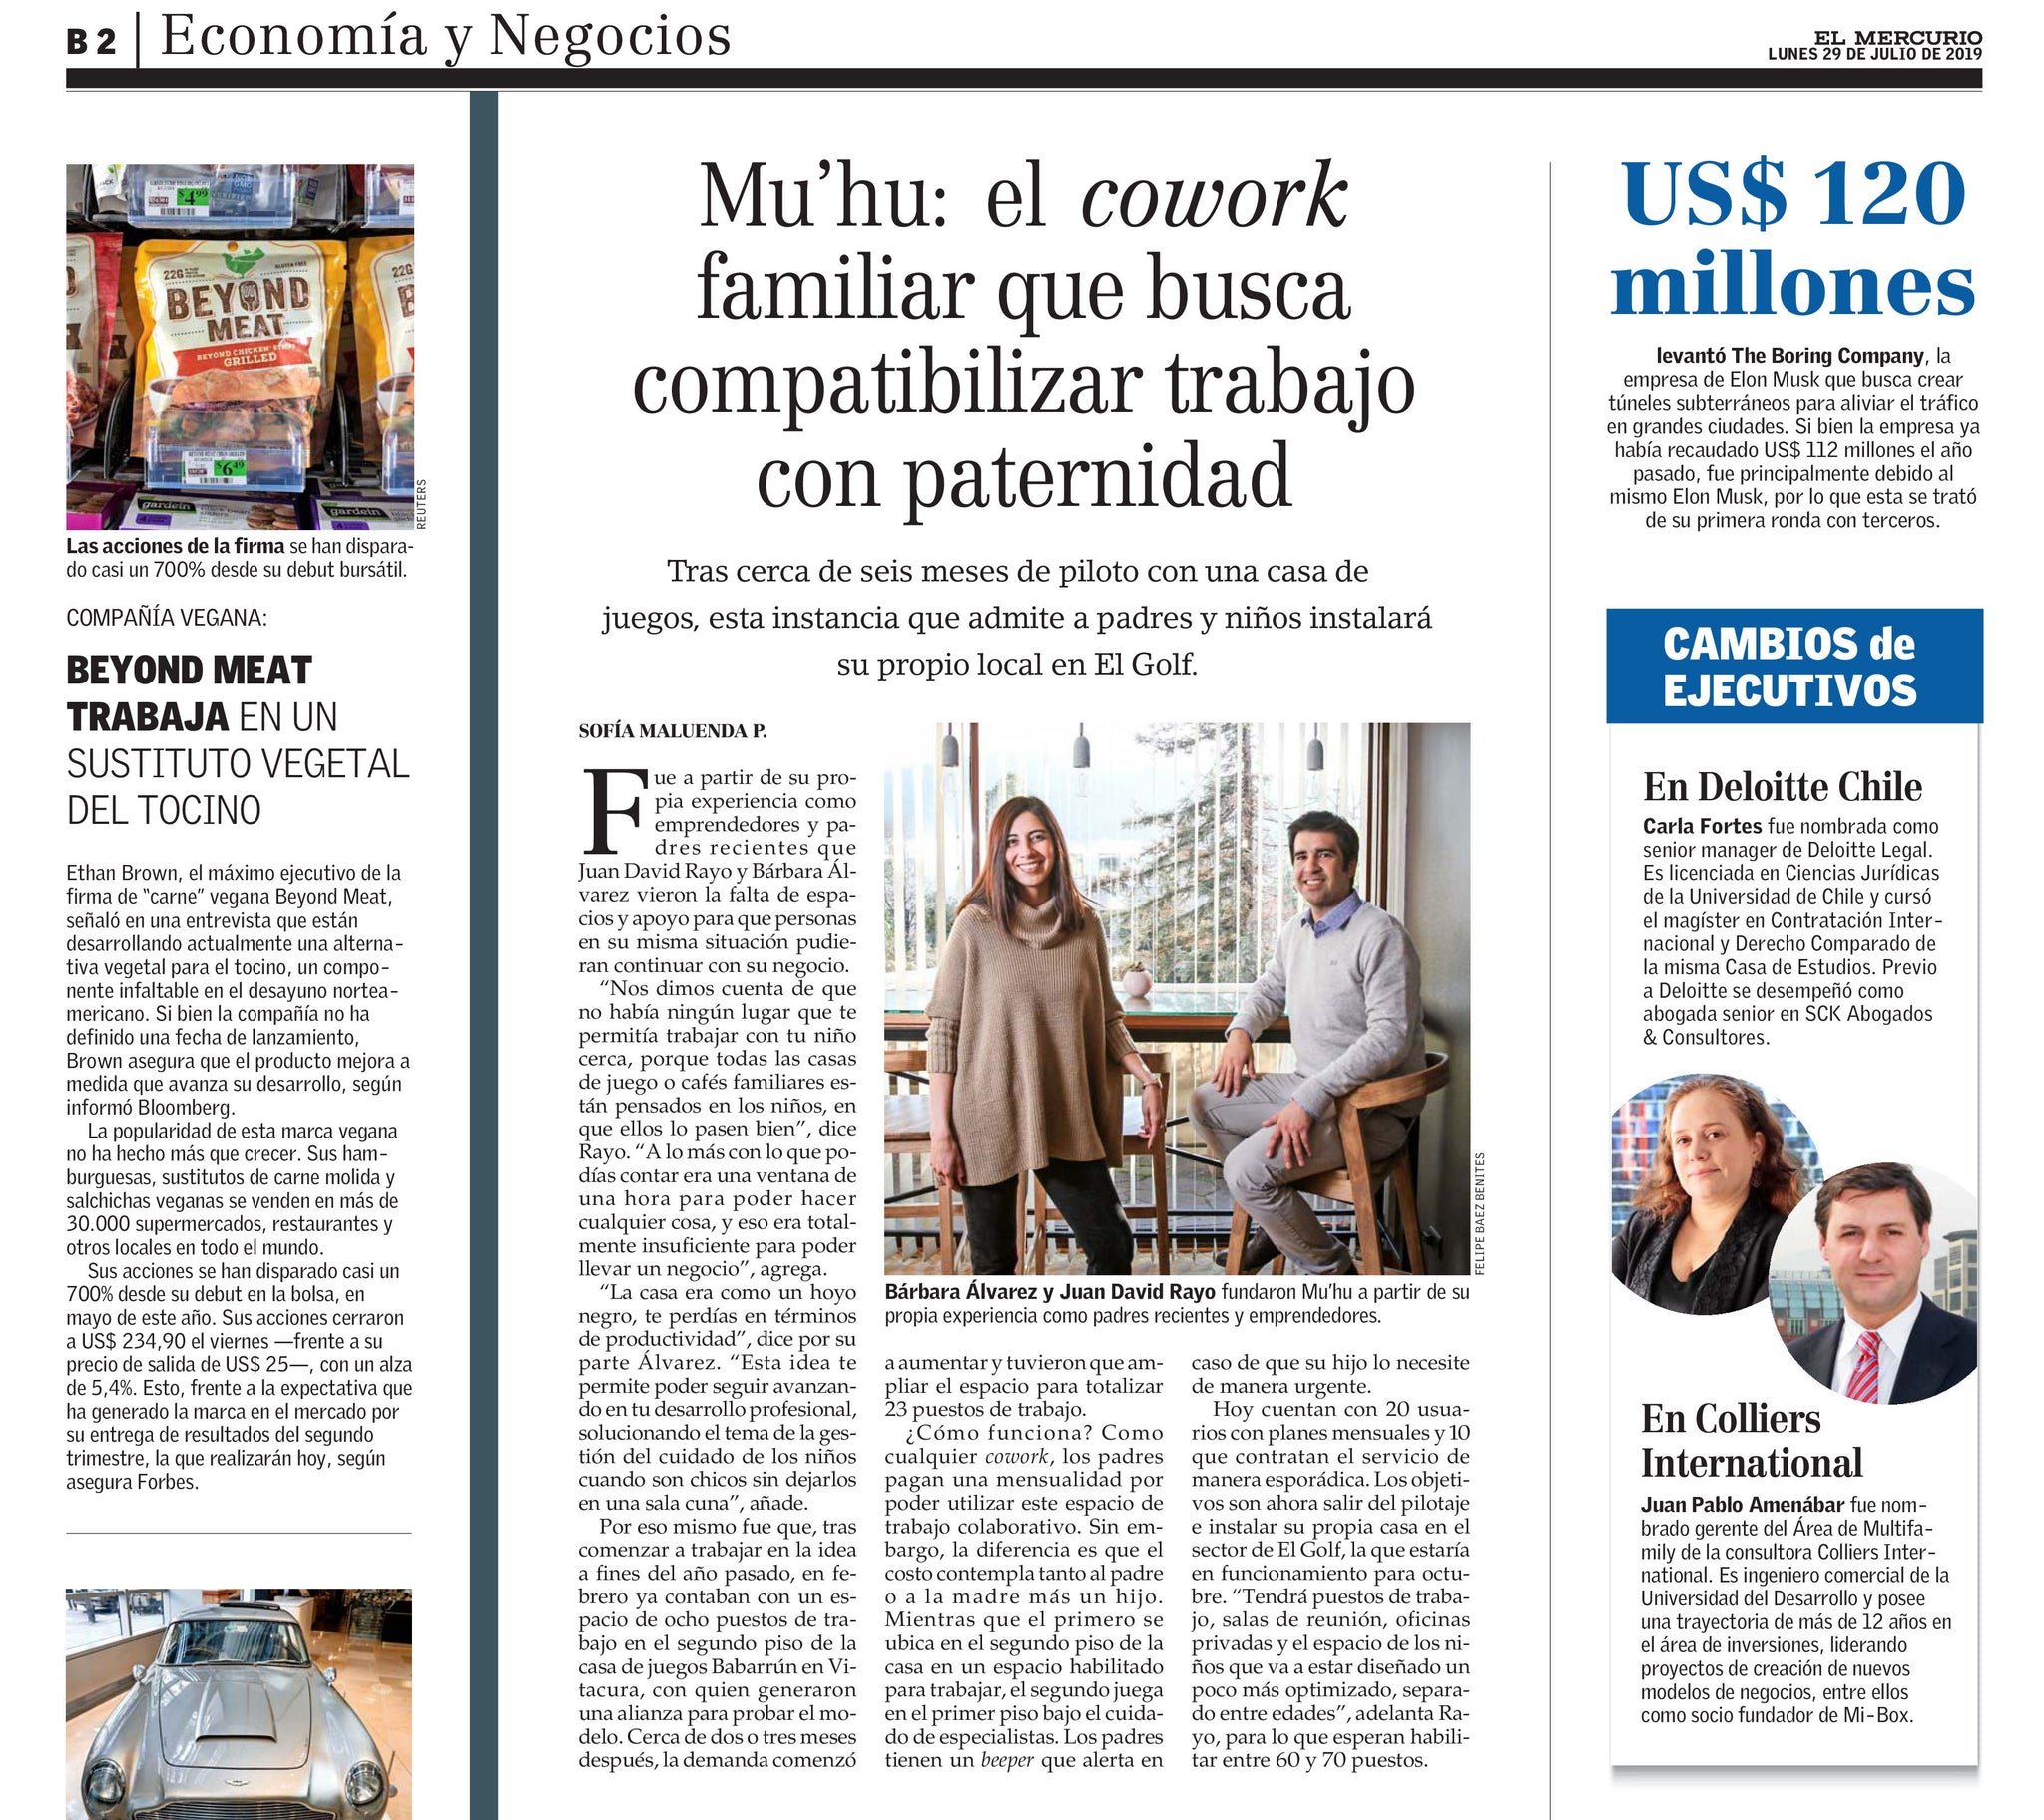 29-07-2019 El Mercurio - Mu’hu: el cowork familiar que busca compatibilizar trabajo con paternidad